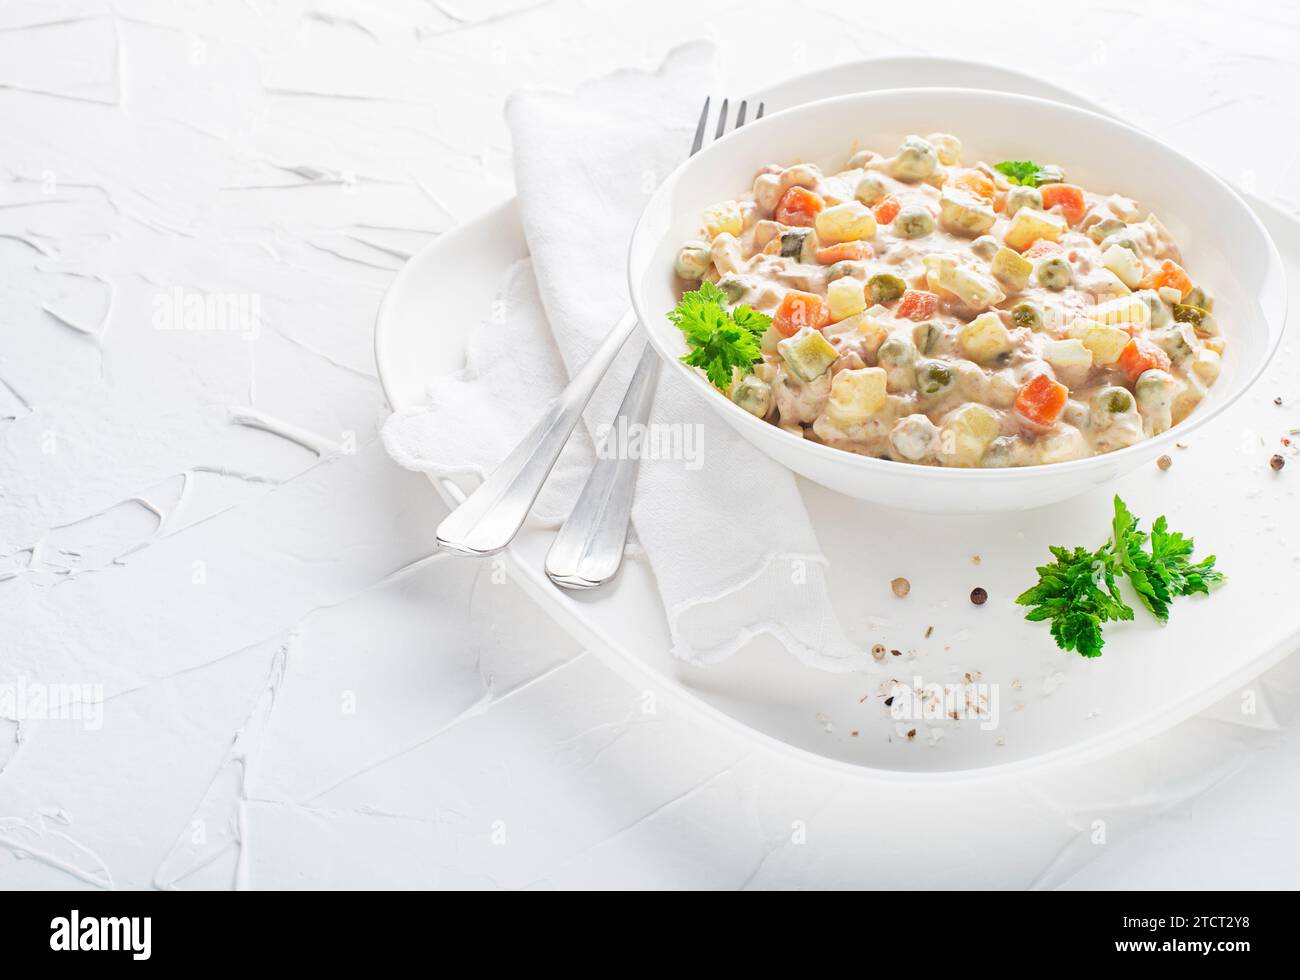 Piatto di insalata russa o insalata francese con verdure e uova condite con maionese su tavolo bianco Foto Stock